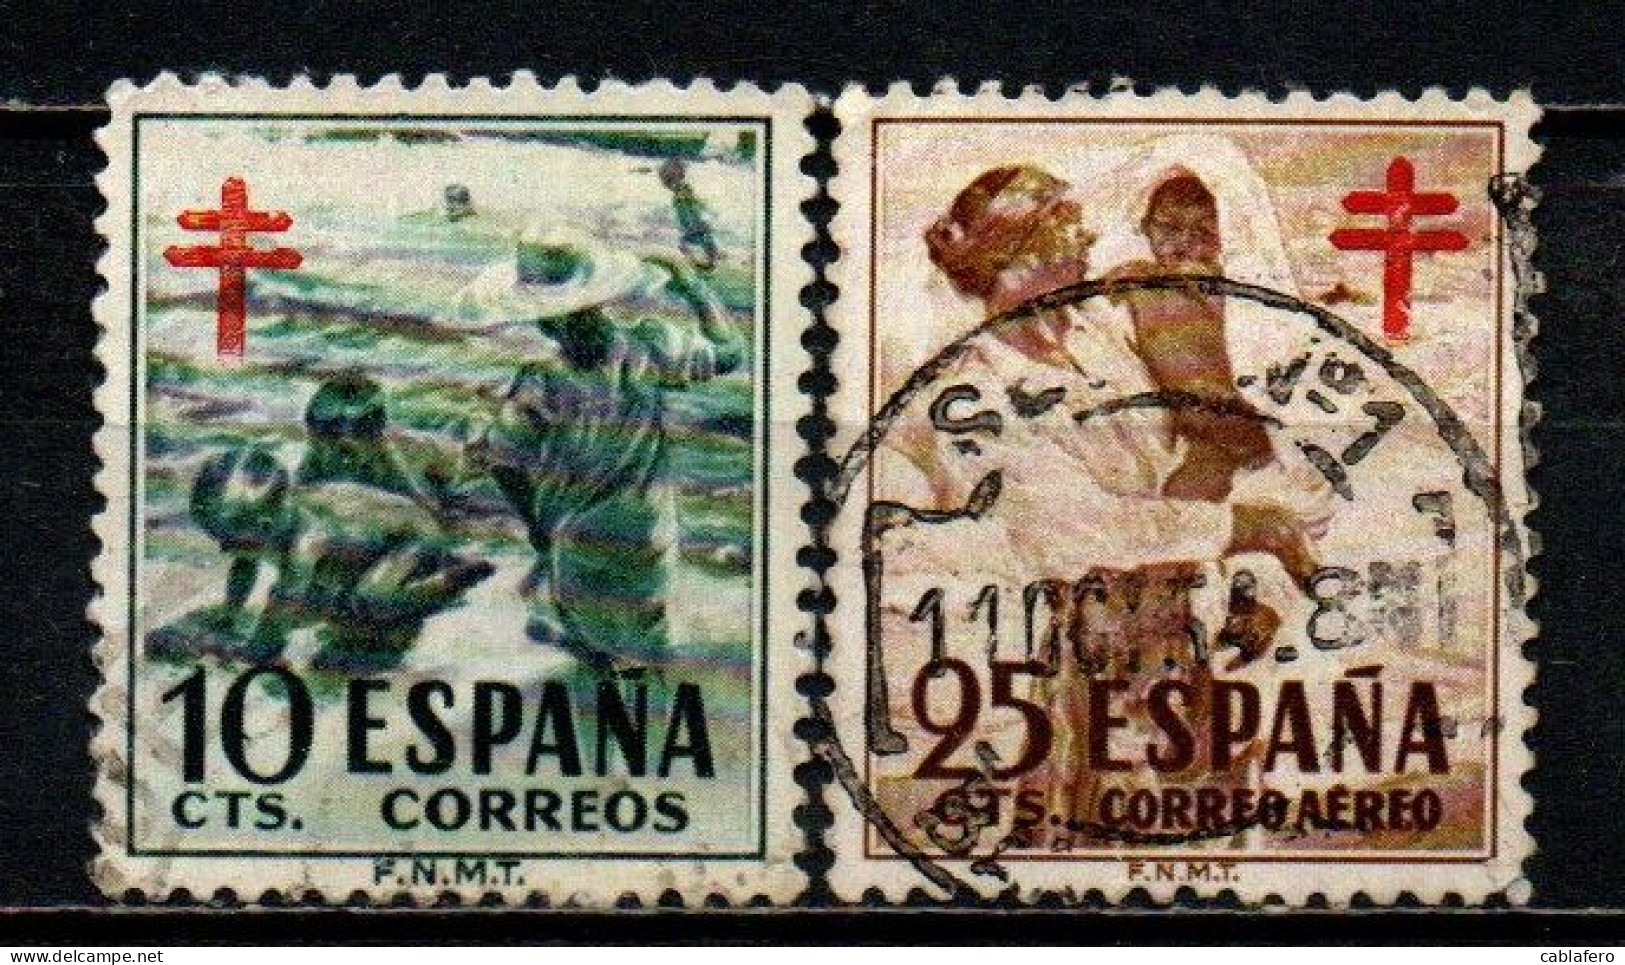 SPAGNA - 1951 - BAMBINI SULLA SPIAGGIA E MADRE CON FIGLIO - PRO TUBERCOLOTICI - CROCE DI LORENA IN ROSSO - USATI - Gebraucht